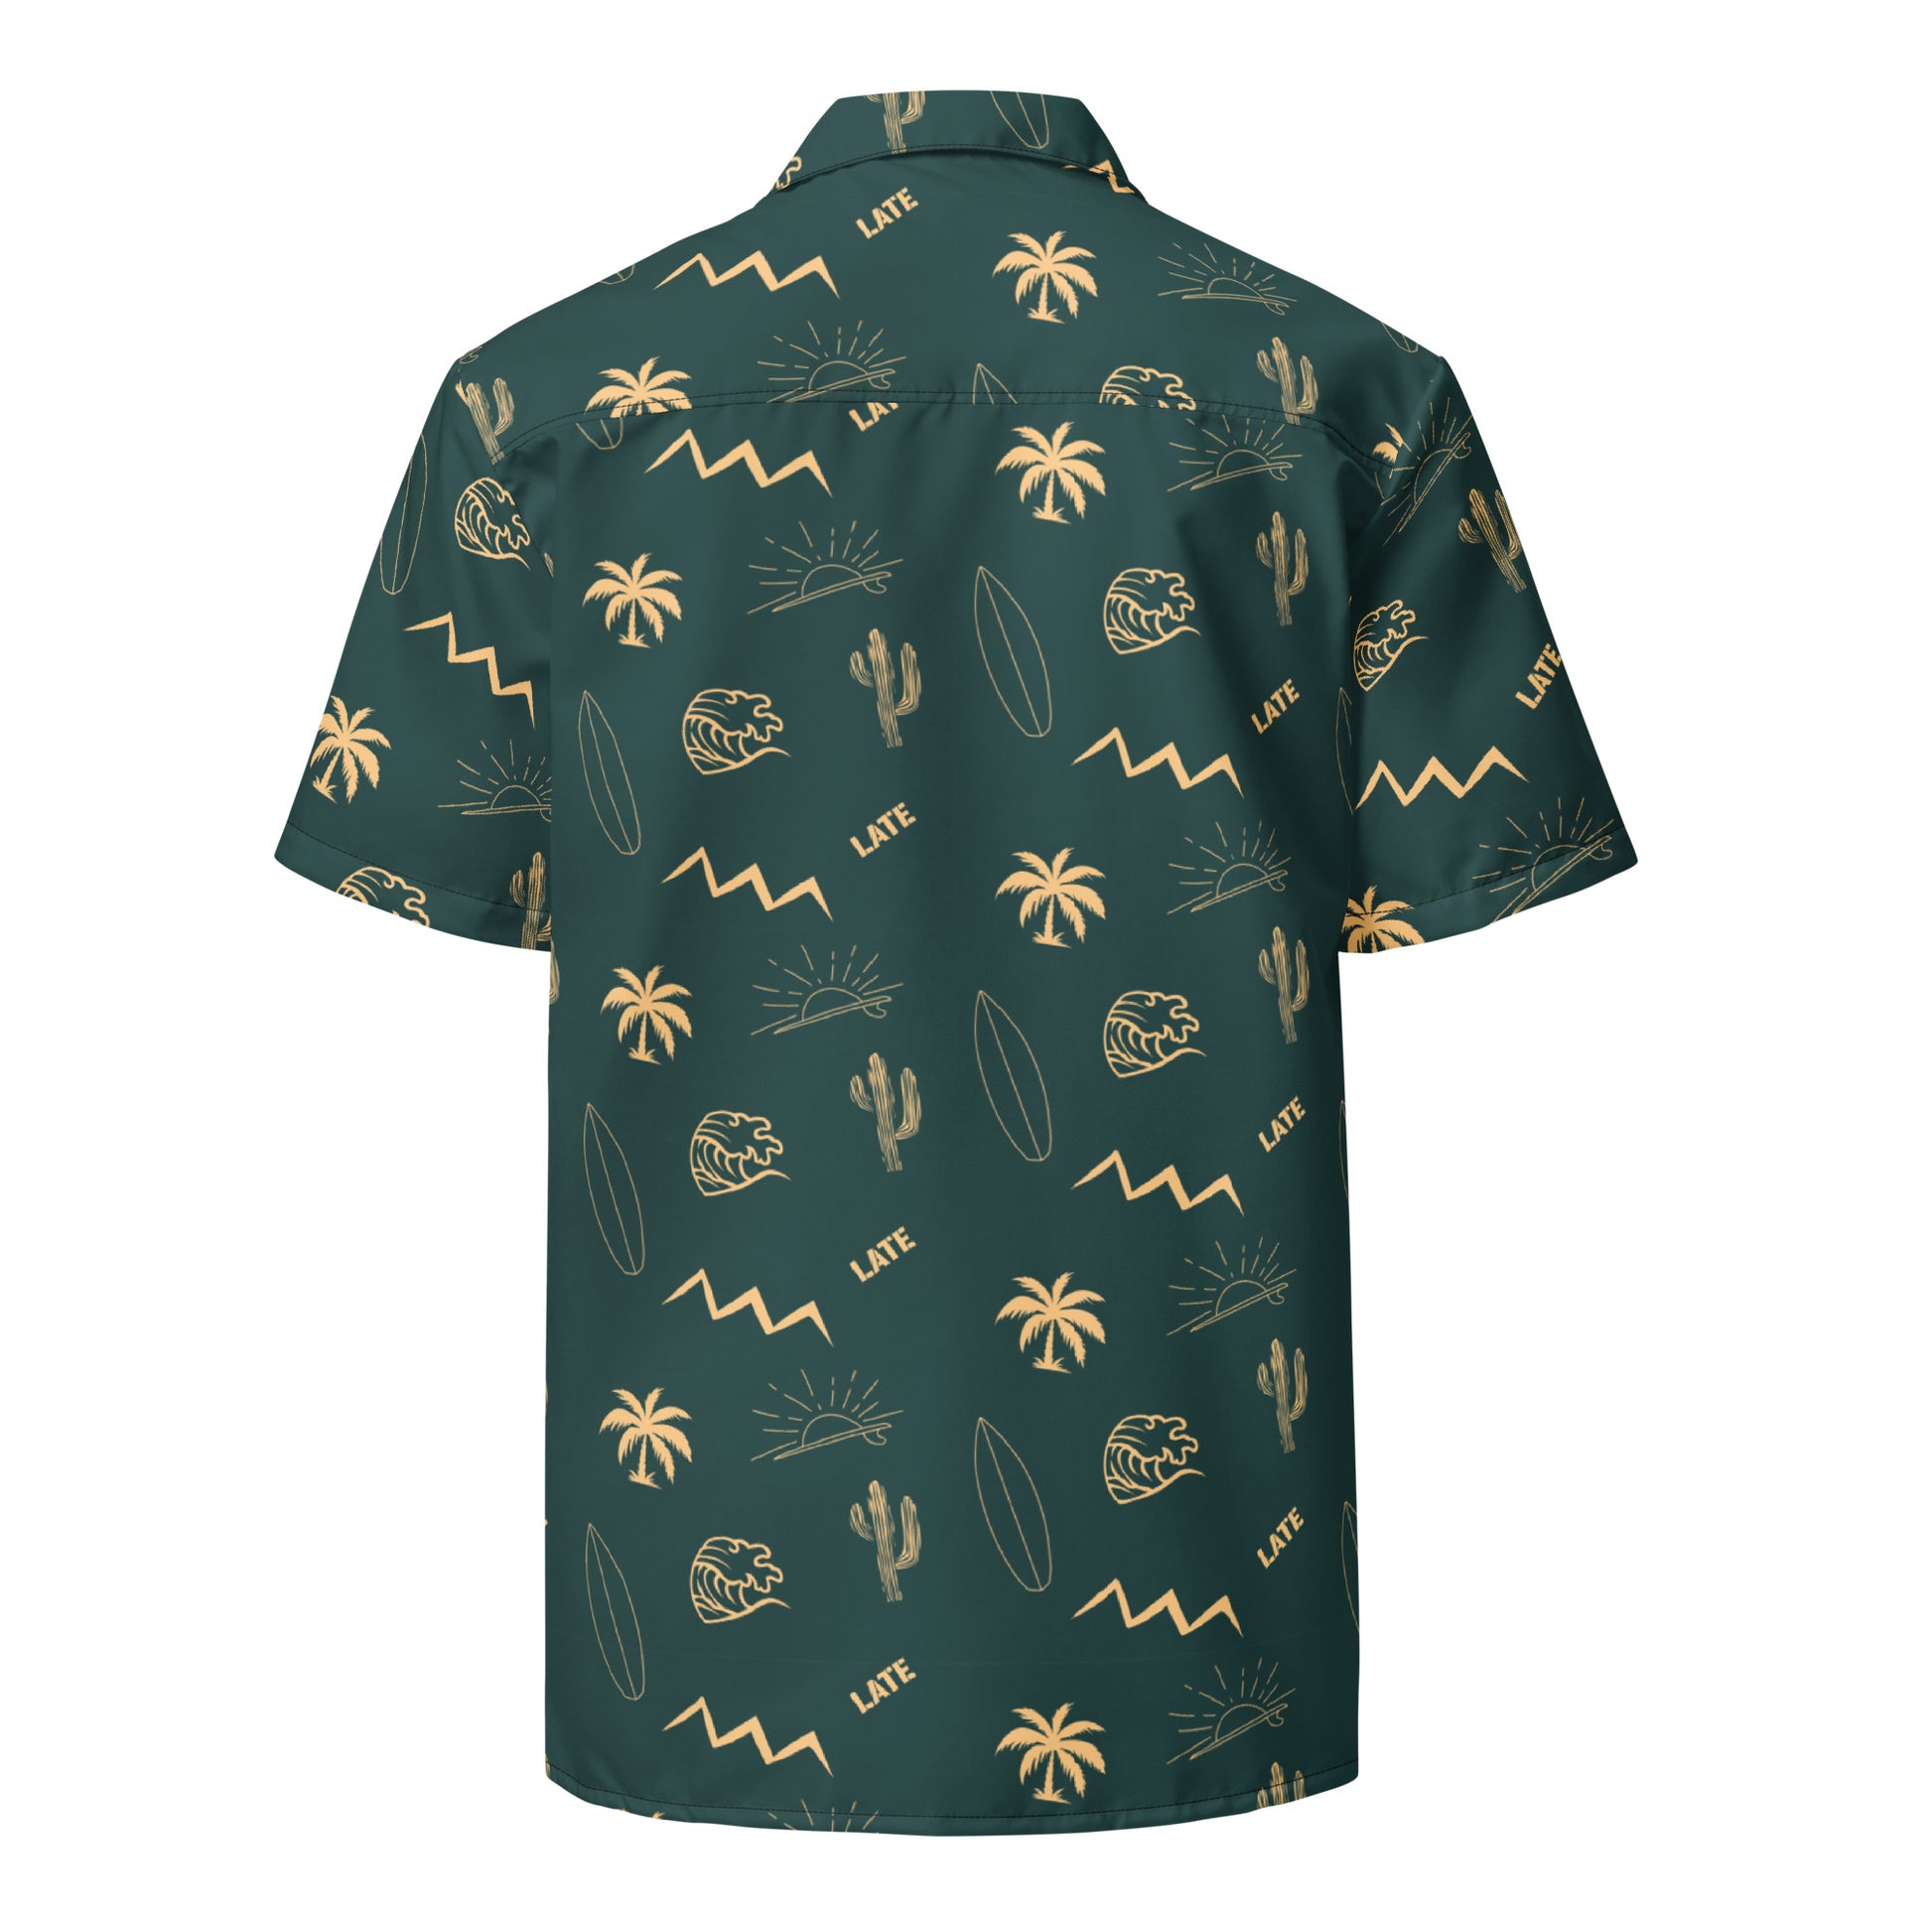 Chemise surfwear vintage, Logo Late, vagues tahitienne, montagnes alpines, cactus et palmier couleur verte et blanc sable. Chemise de dos